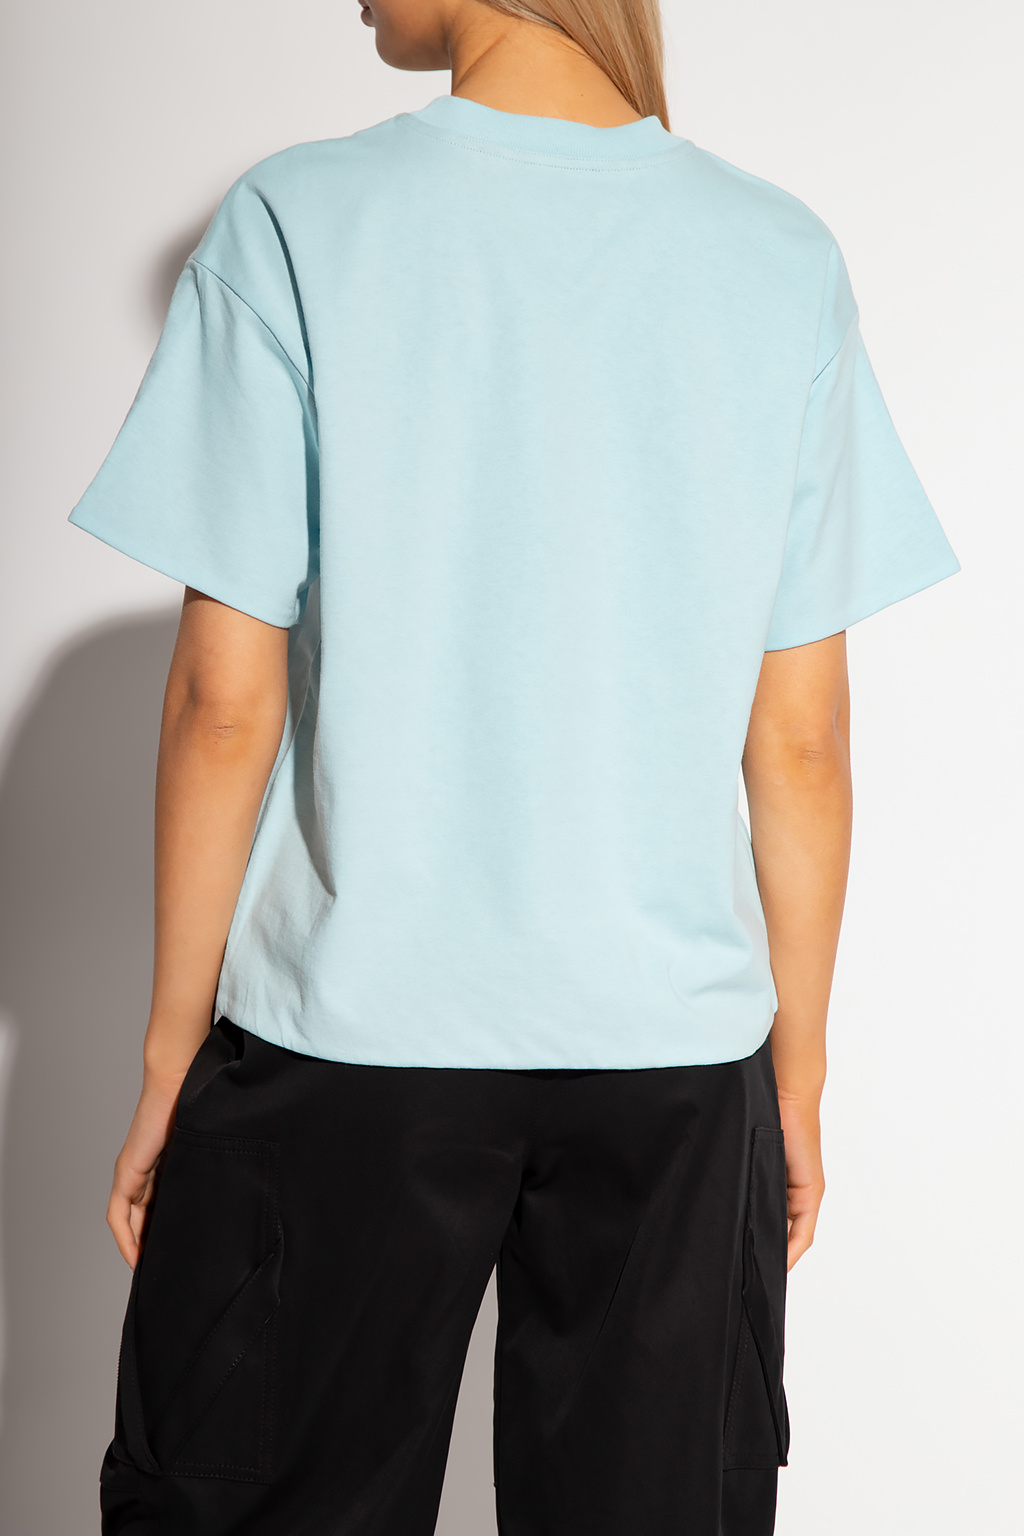 Louis Vuitton Monogram Wave Self-Tie T-Shirt Blue. Size Xs